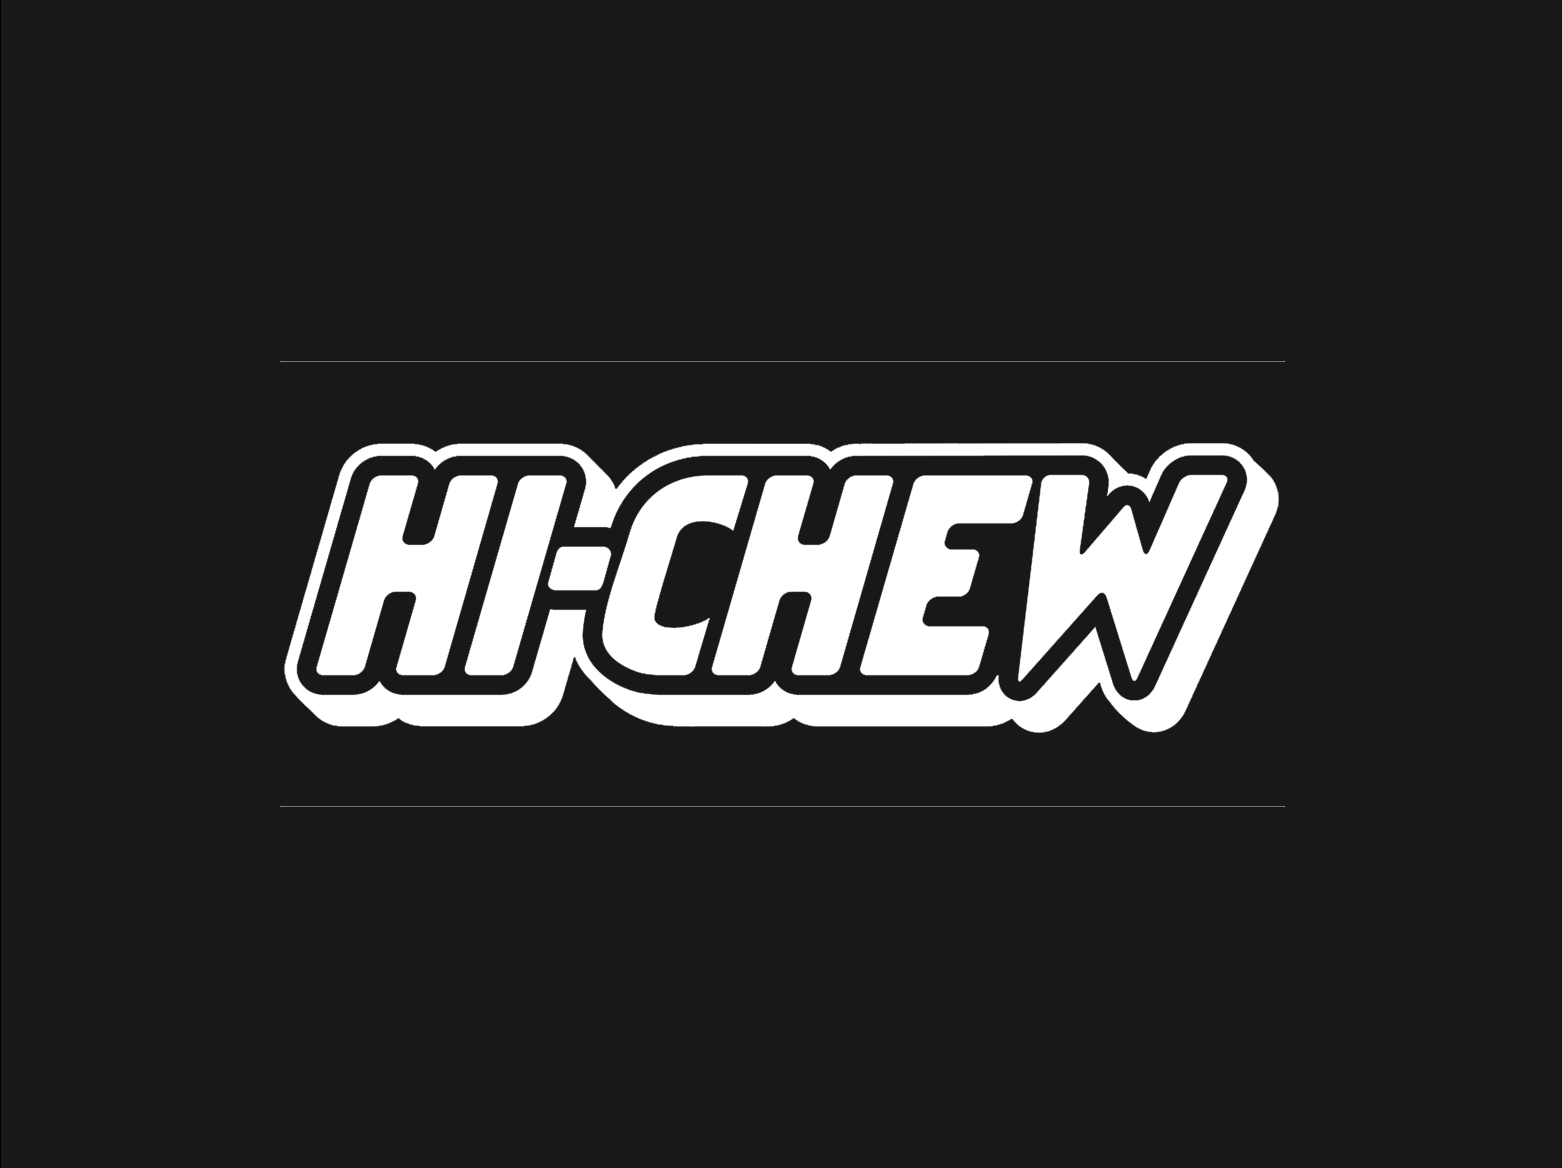 Hi-CHEW logo